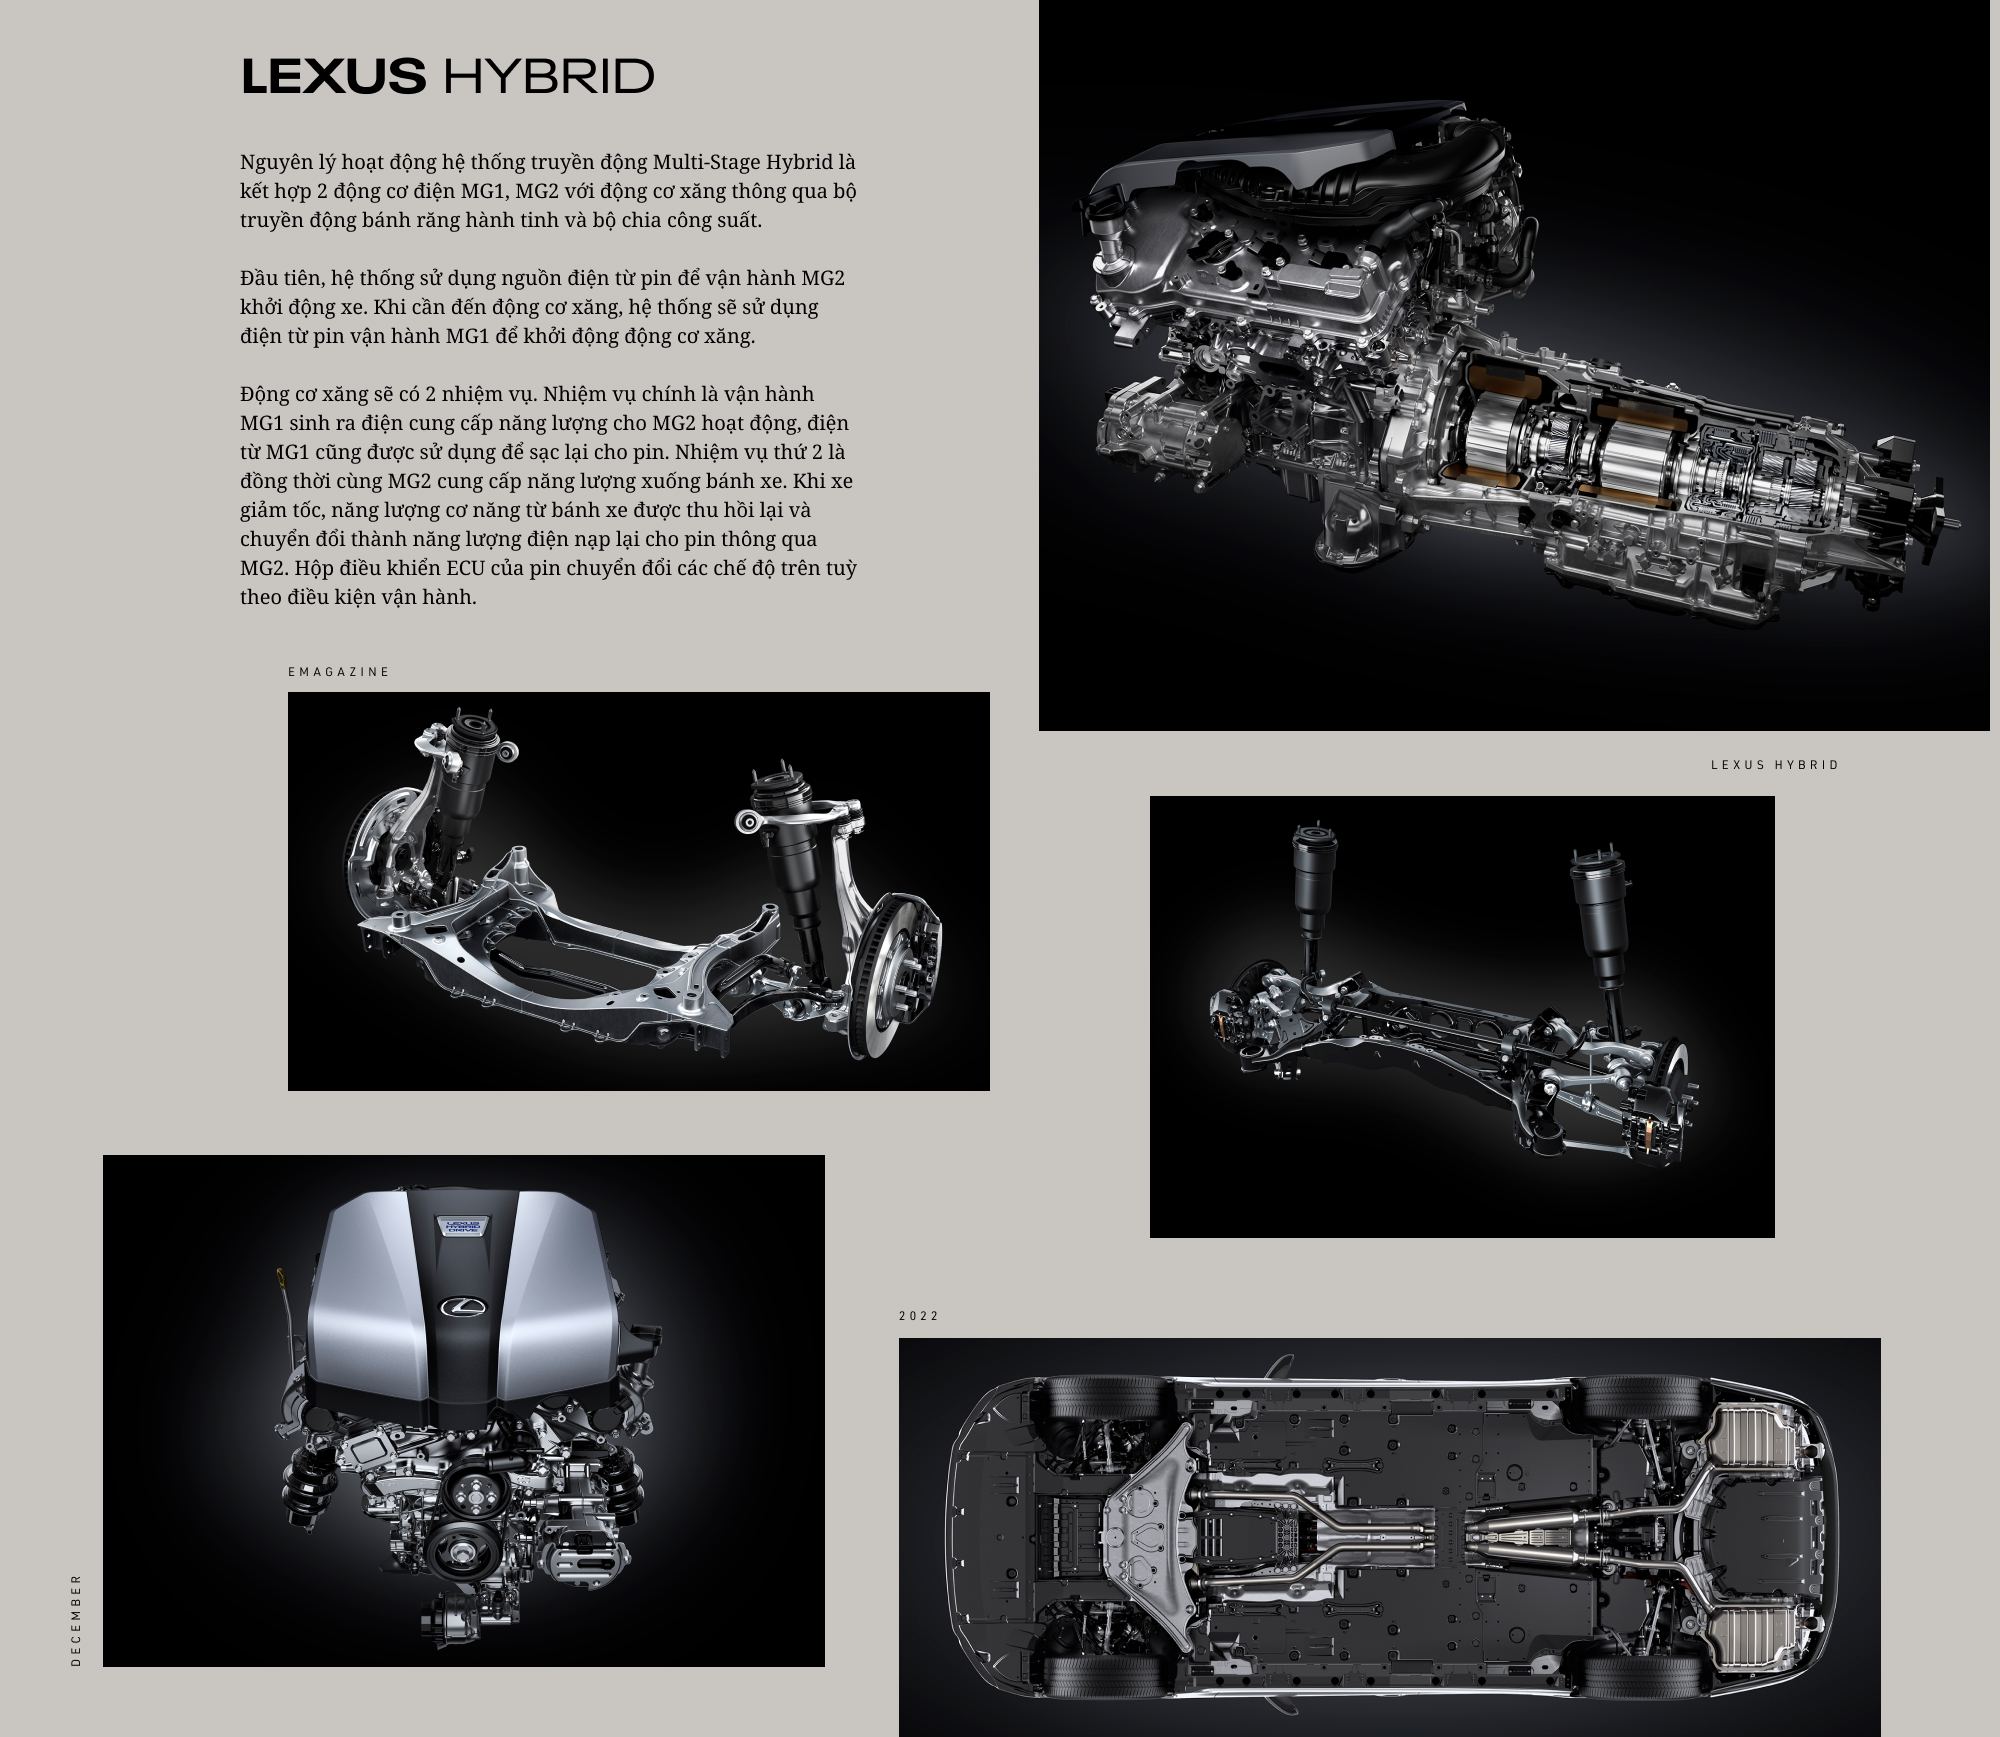 Hybrid - Niềm tin không khoan nhượng dẫn Lexus tới thành công - Ảnh 4.